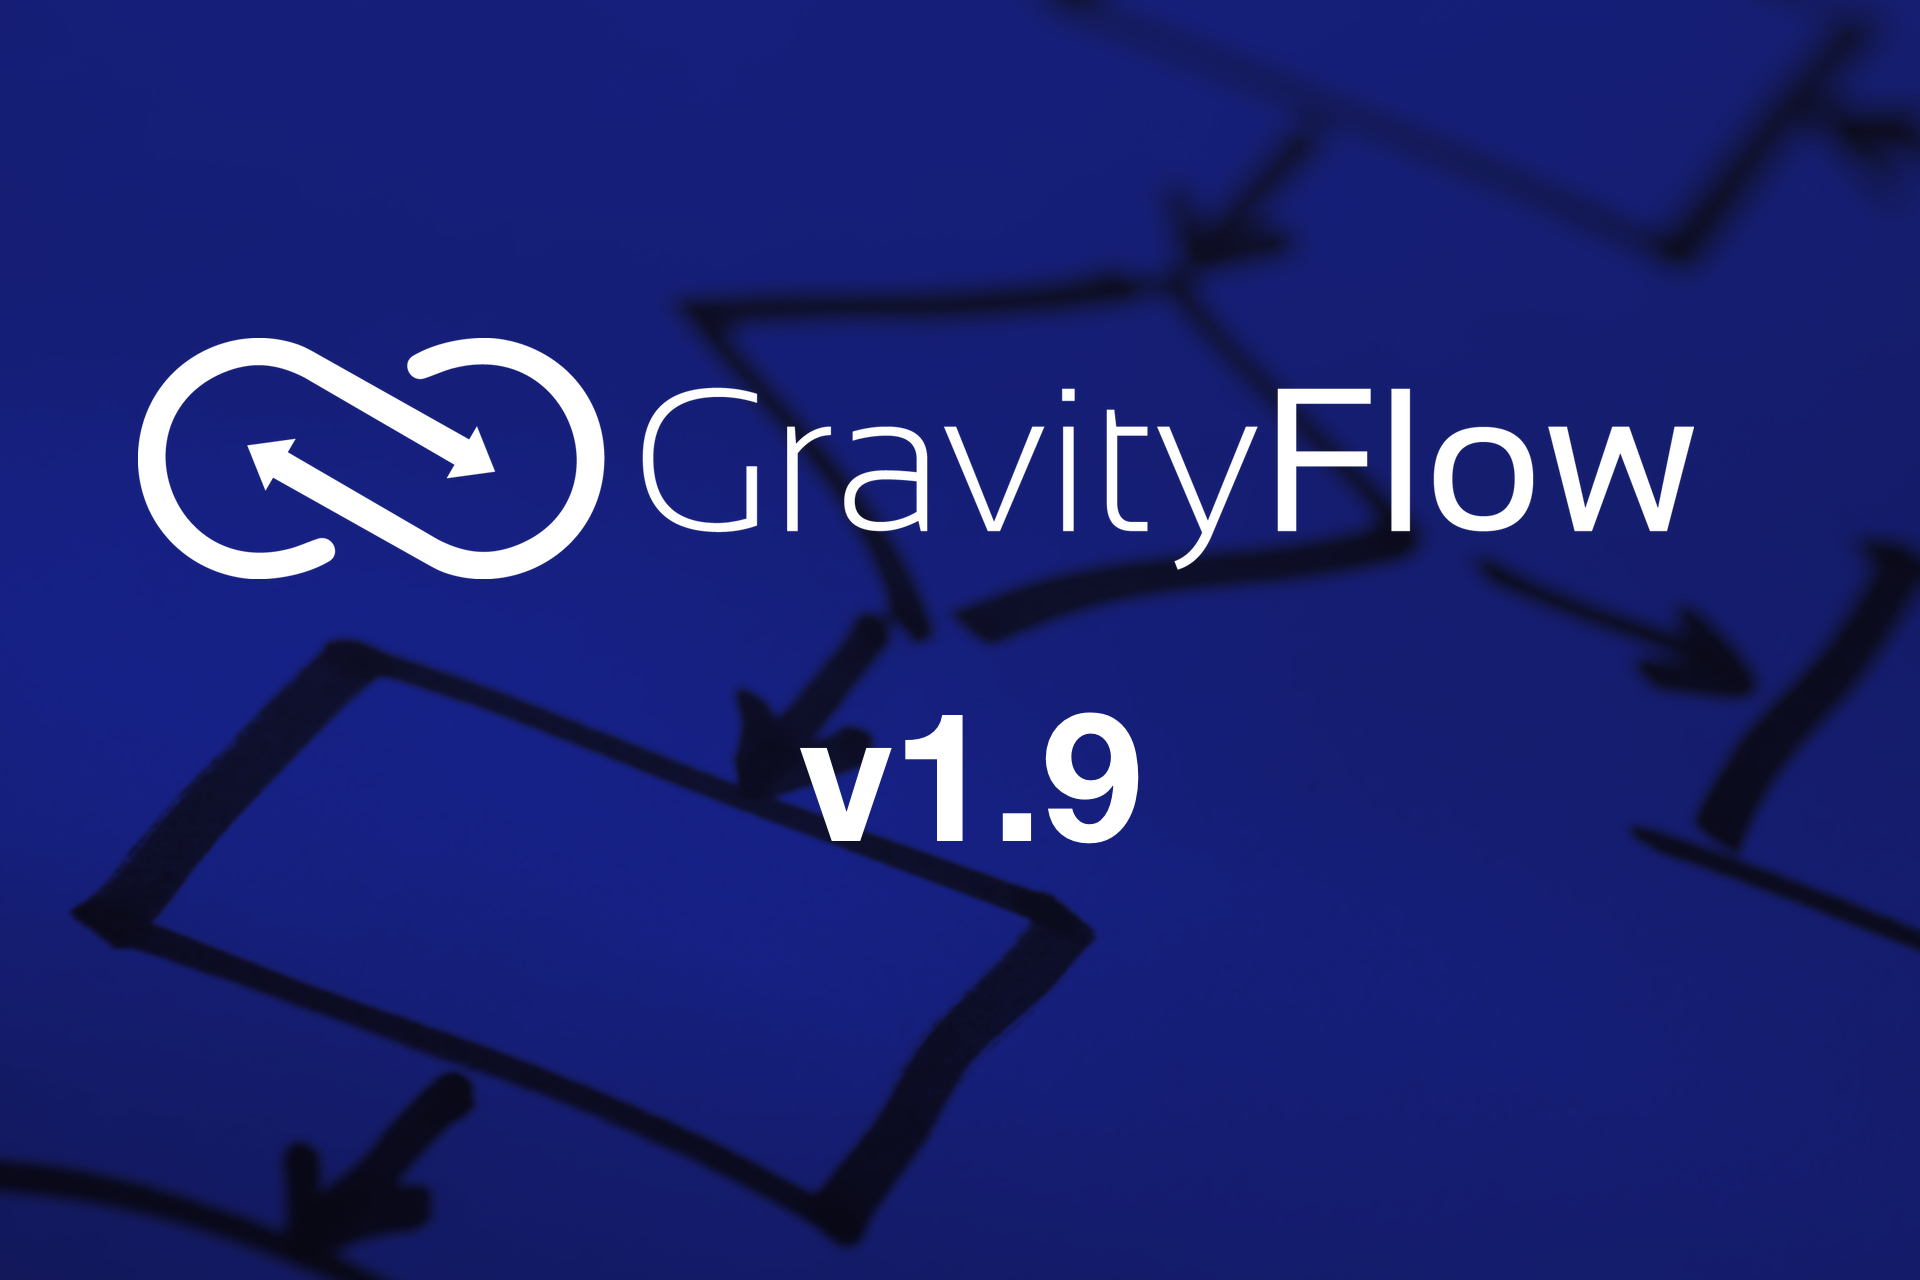 Gravity Flow v1.9 Released